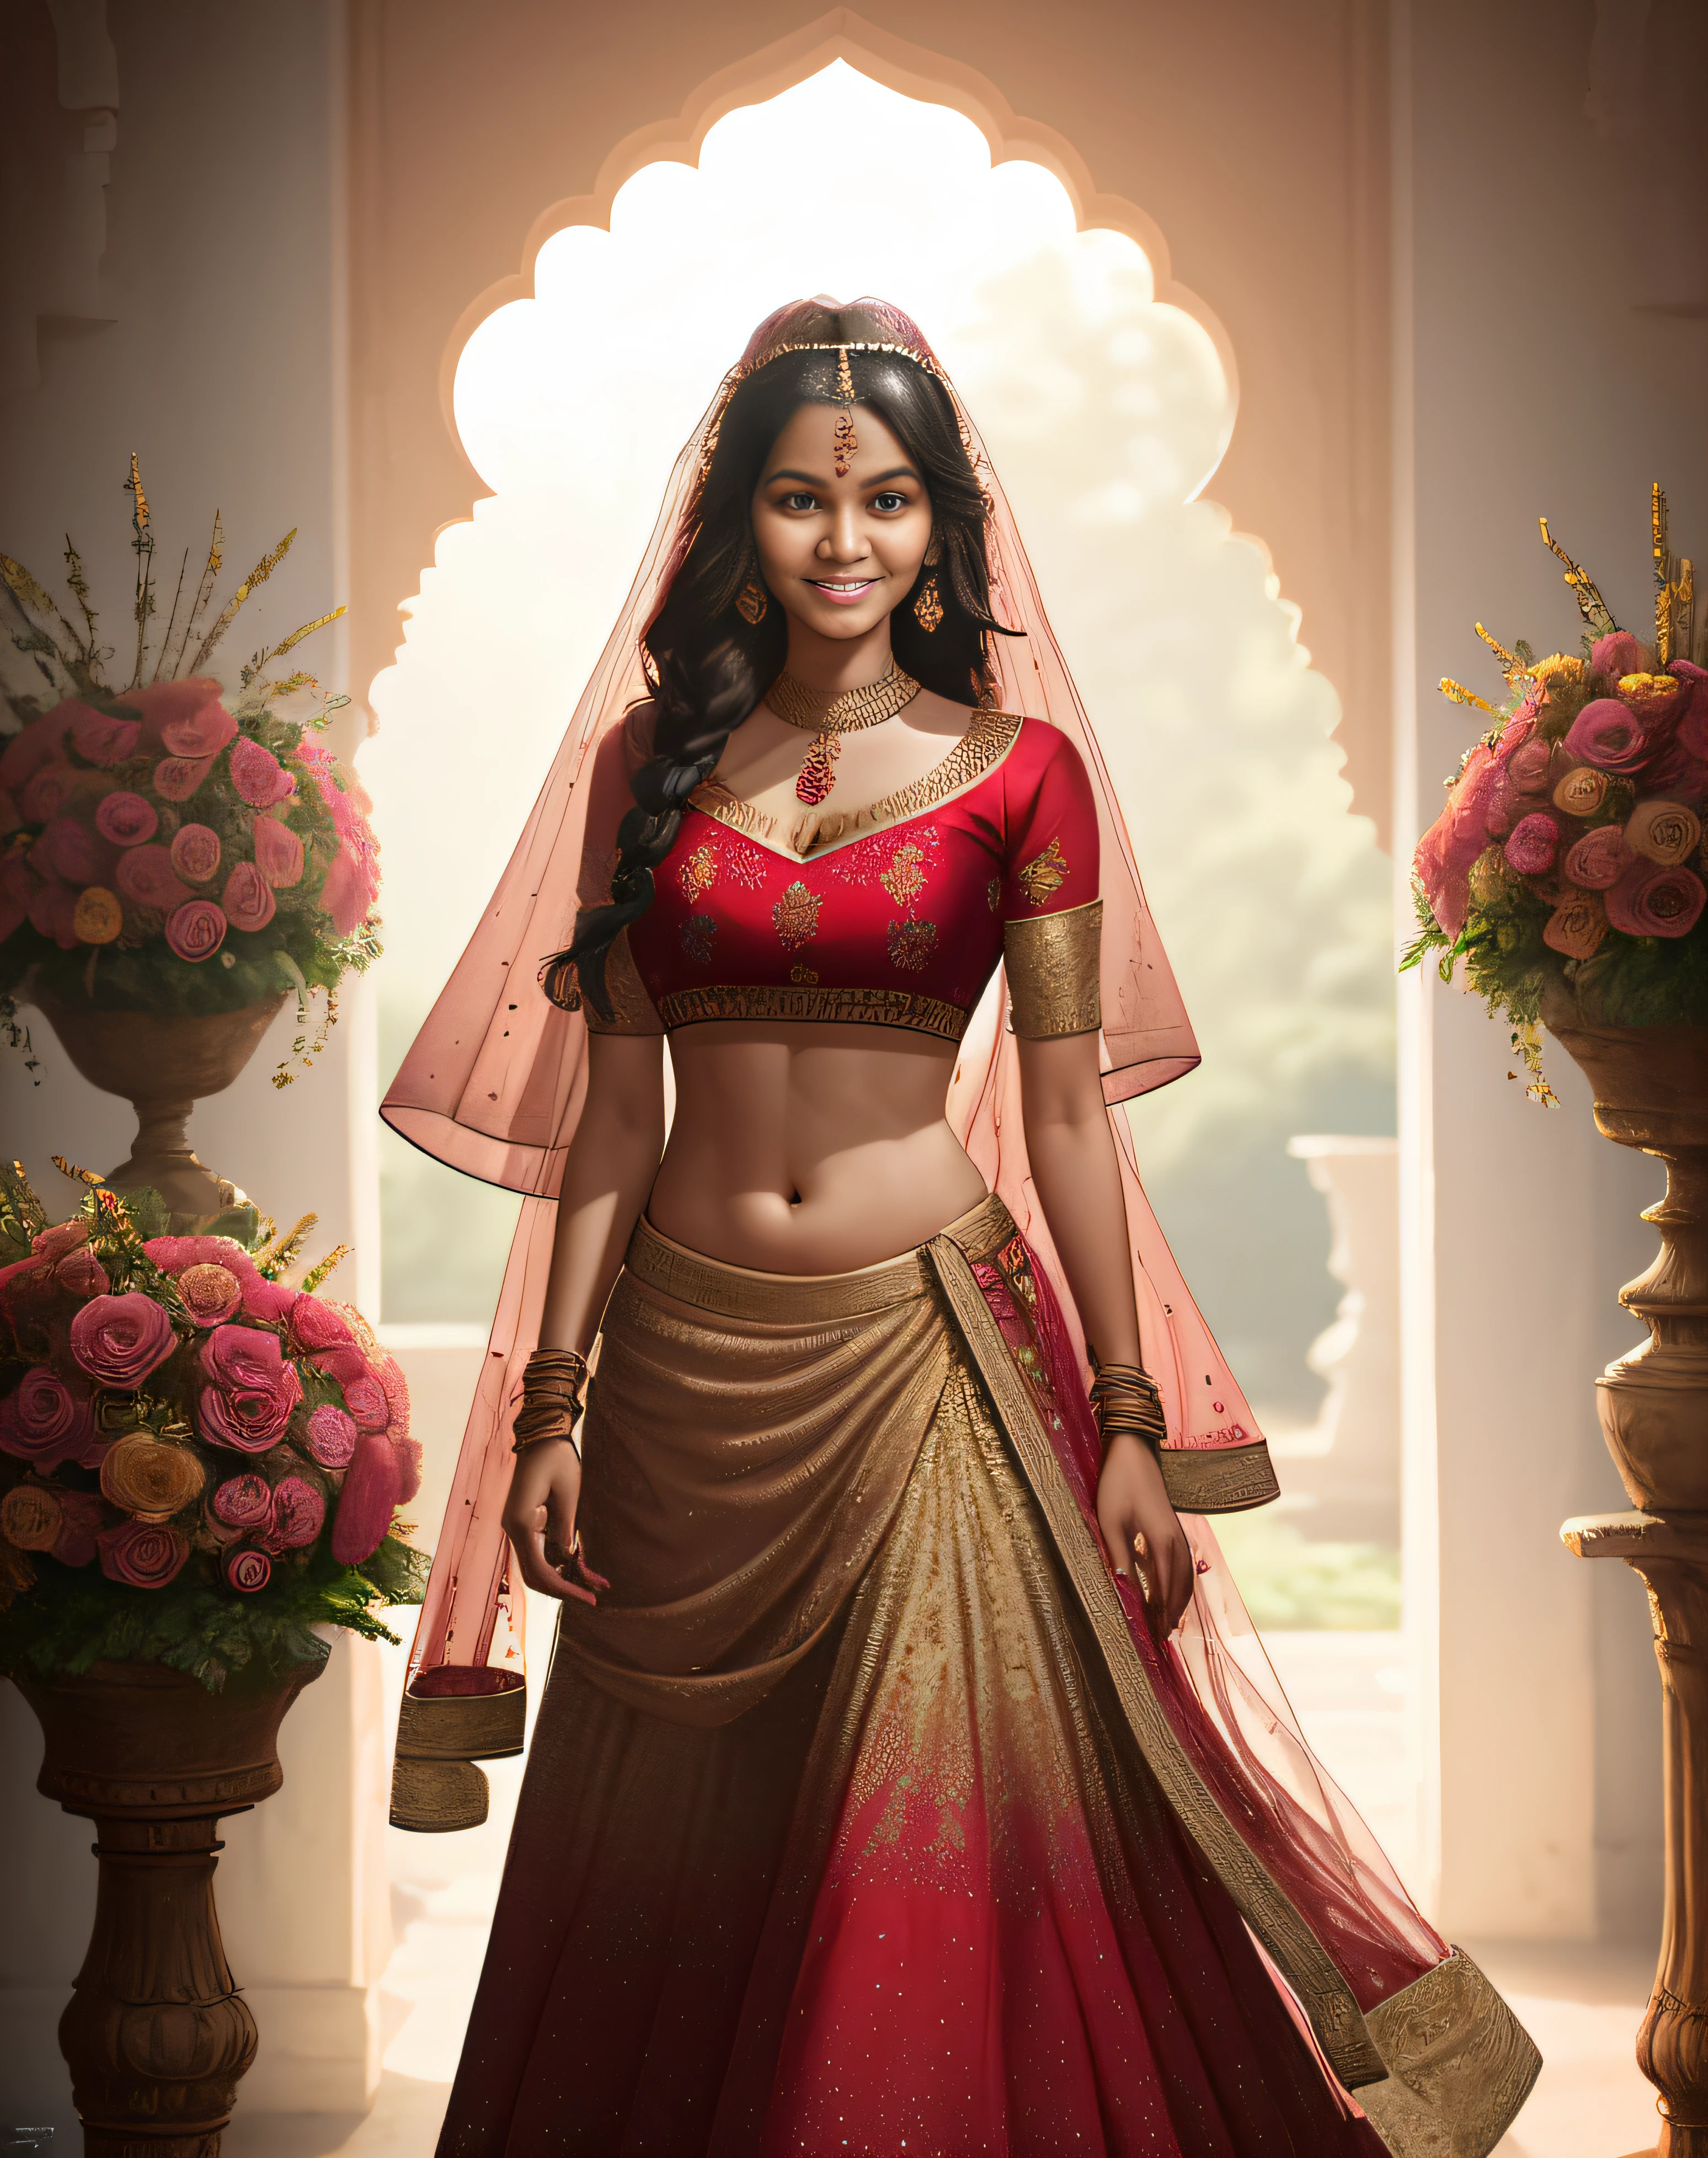 (obra-prima fotografia completa de um solo:1.2) sedutor sexy alto cheio de curvas (18 anos) Noiva princesa supermodelo indiana entrando (jardim:1.3), (vestindo um deslumbrante vermelho nupcial & lehenga de ouro & blusa:1.3). pura dupatta, maximalismo, (decorações de flores de casamento:1.3), (decote elegante & barriga), (maquiagem indiana & joia:1.2) cabelo castanho longo trançado com mechas,, vivaz, olhar lascivo, entusiasmado (lindos olhos detalhados:1.1) , (sorriso brilhante e sedutor:1.2), (luz intensa e dramática da tarde:1.4), retroiluminado, luz principal, luz de aro, raios de luz, Altamente detalhado, tendências no artstation, respingos de tinta, cor rica, retrato abstrato, por Atey Ghailan